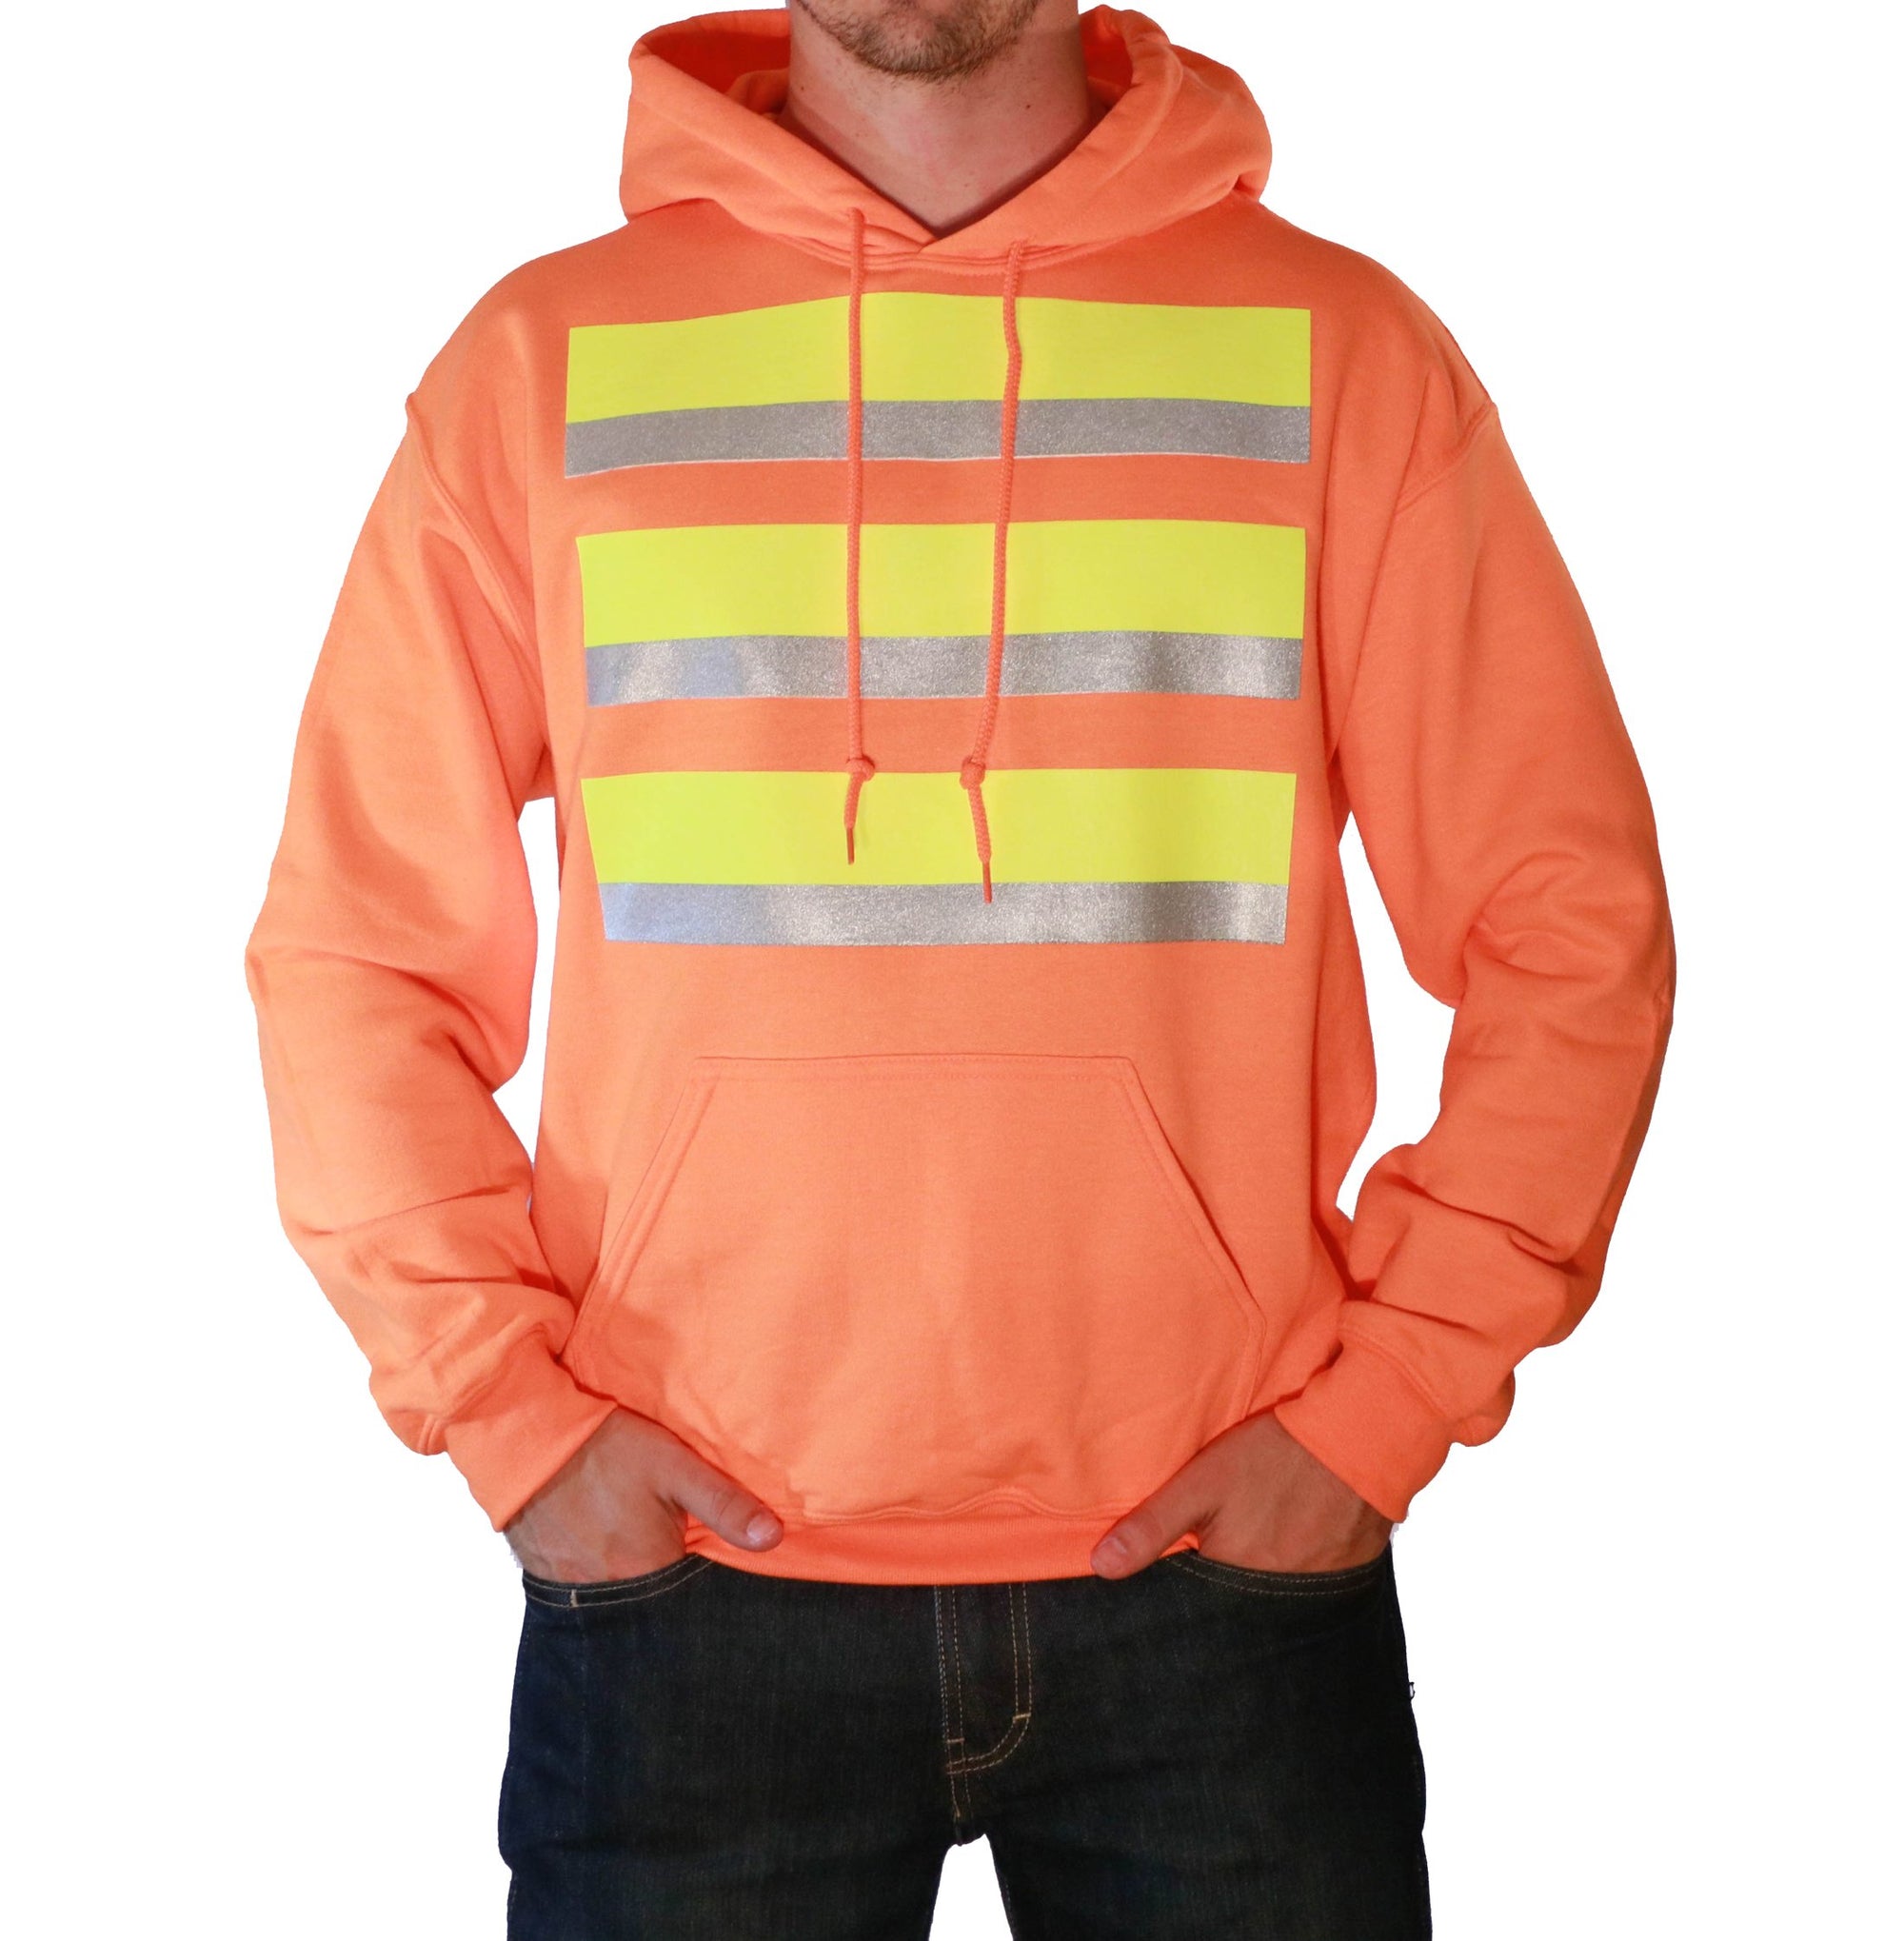 Whistle Workwear Safety Hoodie_Safety Orange - Work World - Workwear, Work Boots, Safety Gear